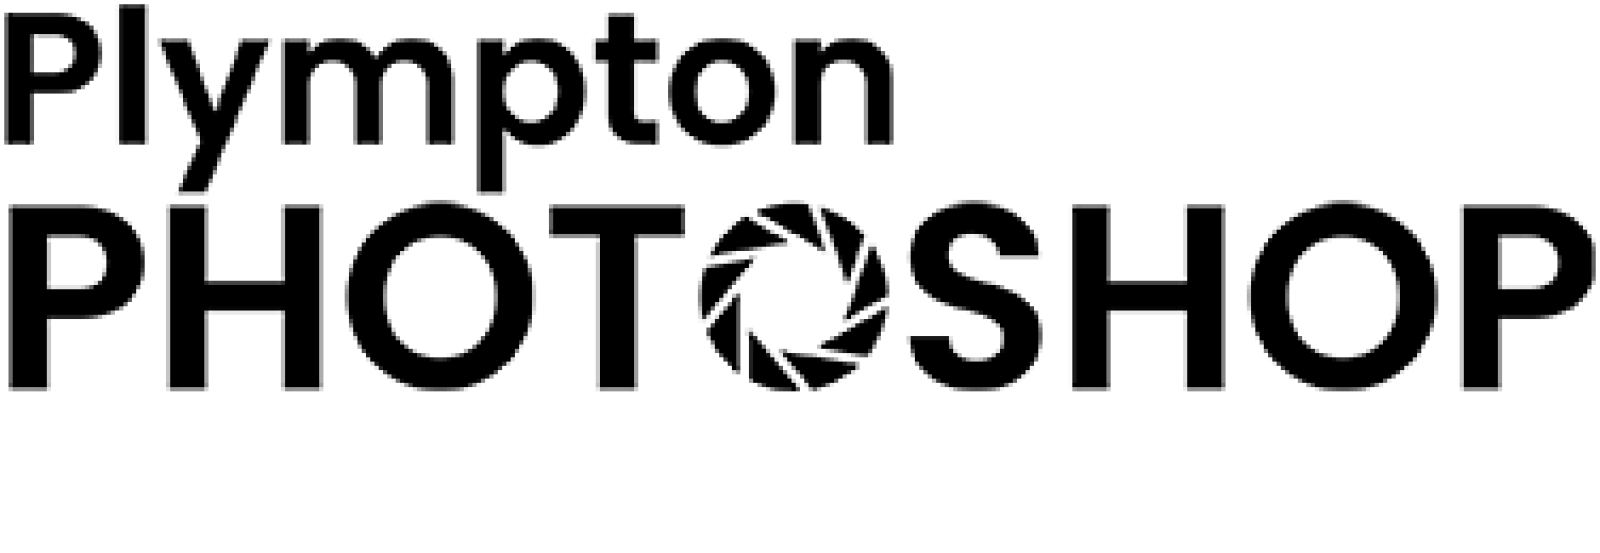 Plympton Photoshop logo